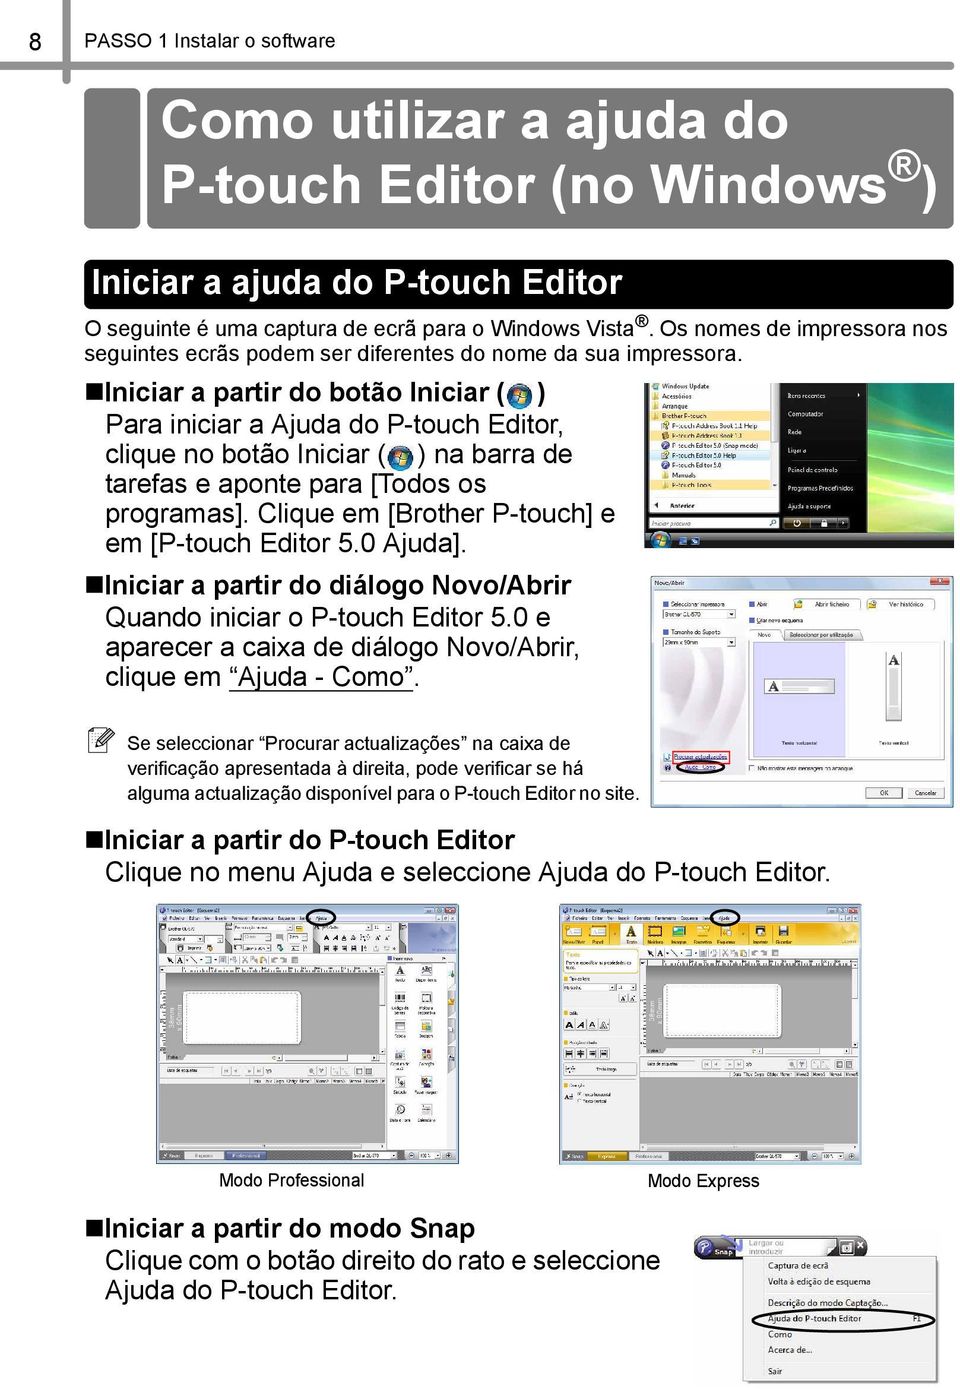 Iniciar a partir do botão Iniciar ( ) Para iniciar a Ajuda do P-touch Editor, clique no botão Iniciar ( ) na barra de tarefas e aponte para [Todos os programas].